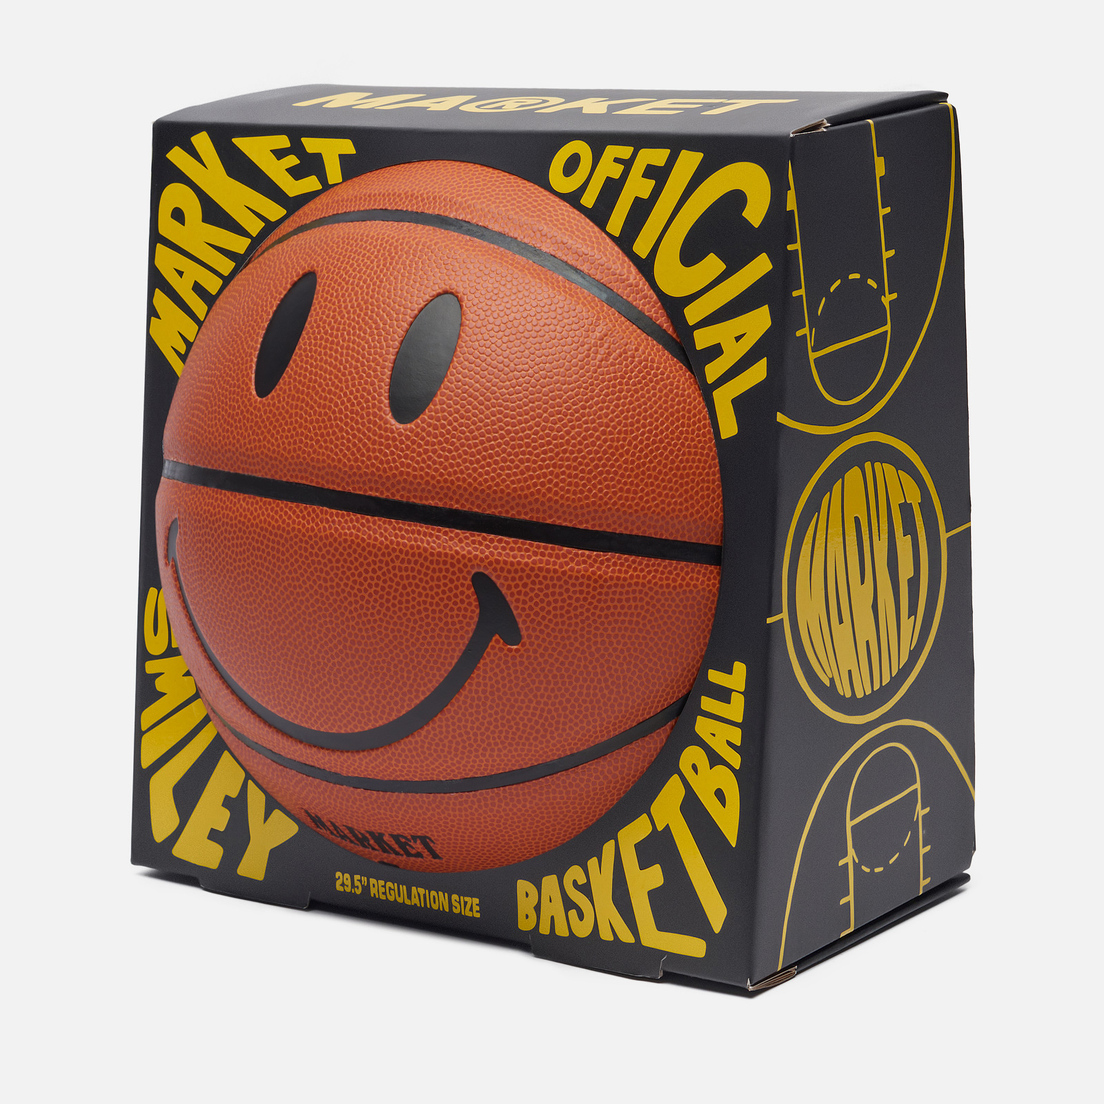 MARKET Баскетбольный мяч Smiley Natural